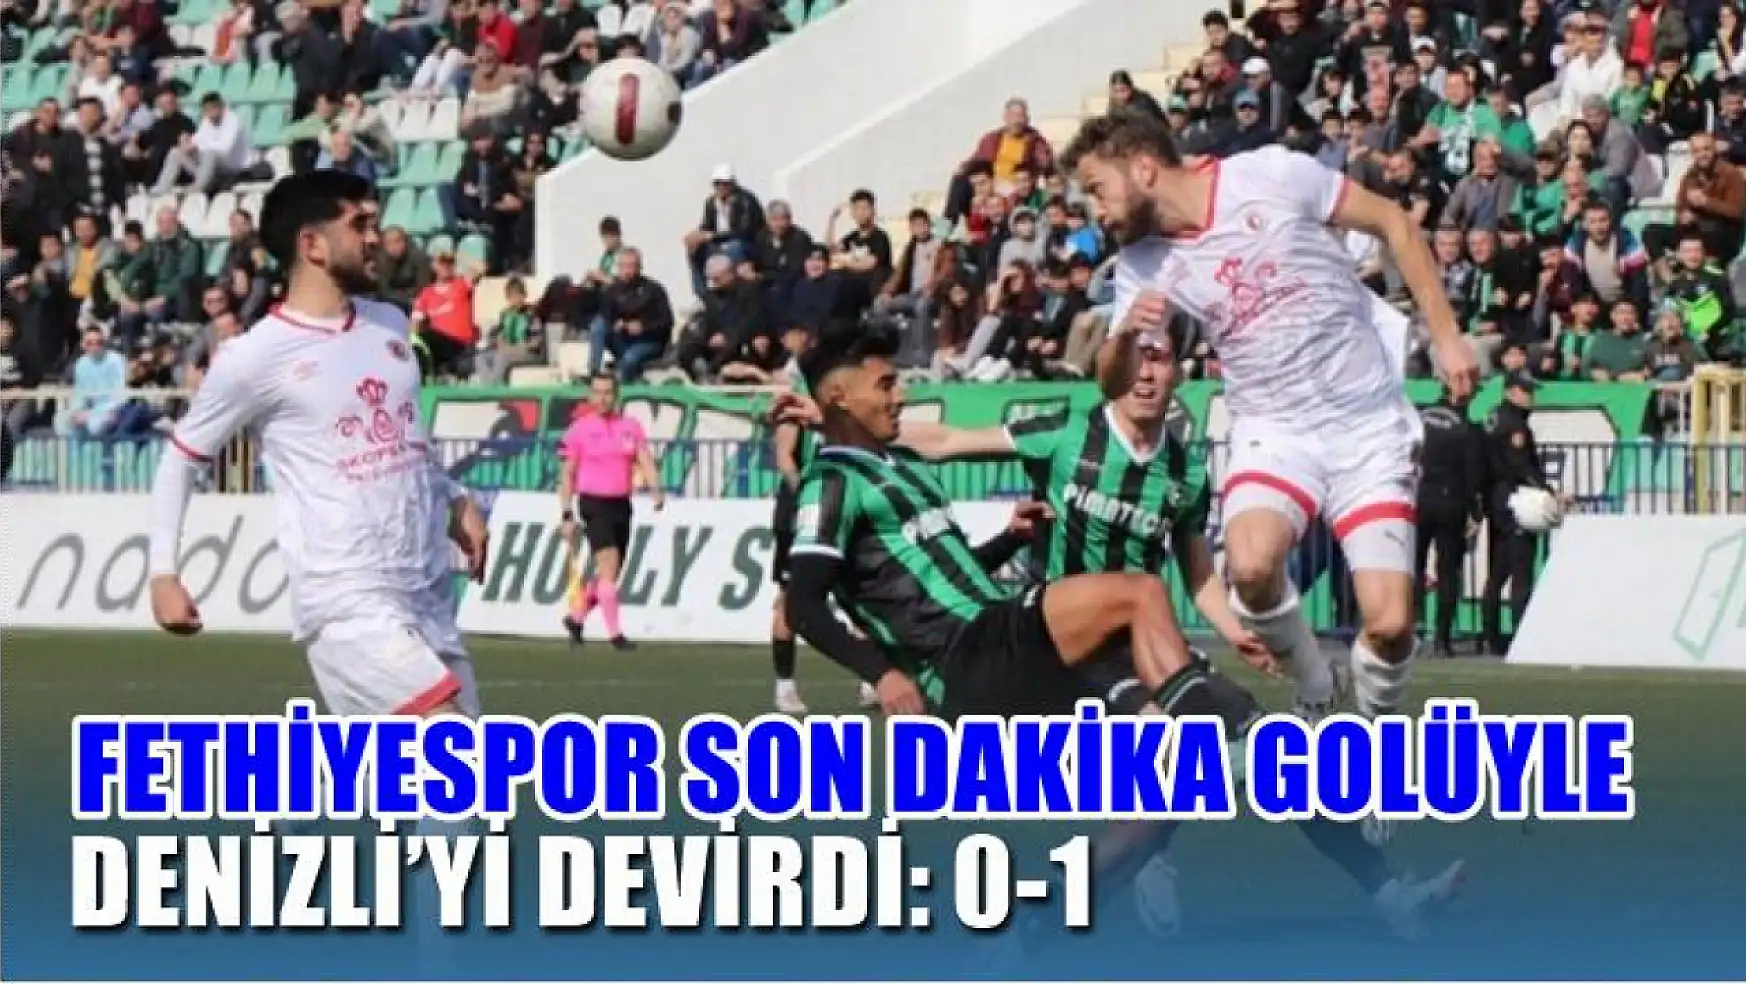 Fethiyespor son dakika golüyle Denizli'yi devirdi: 0-1